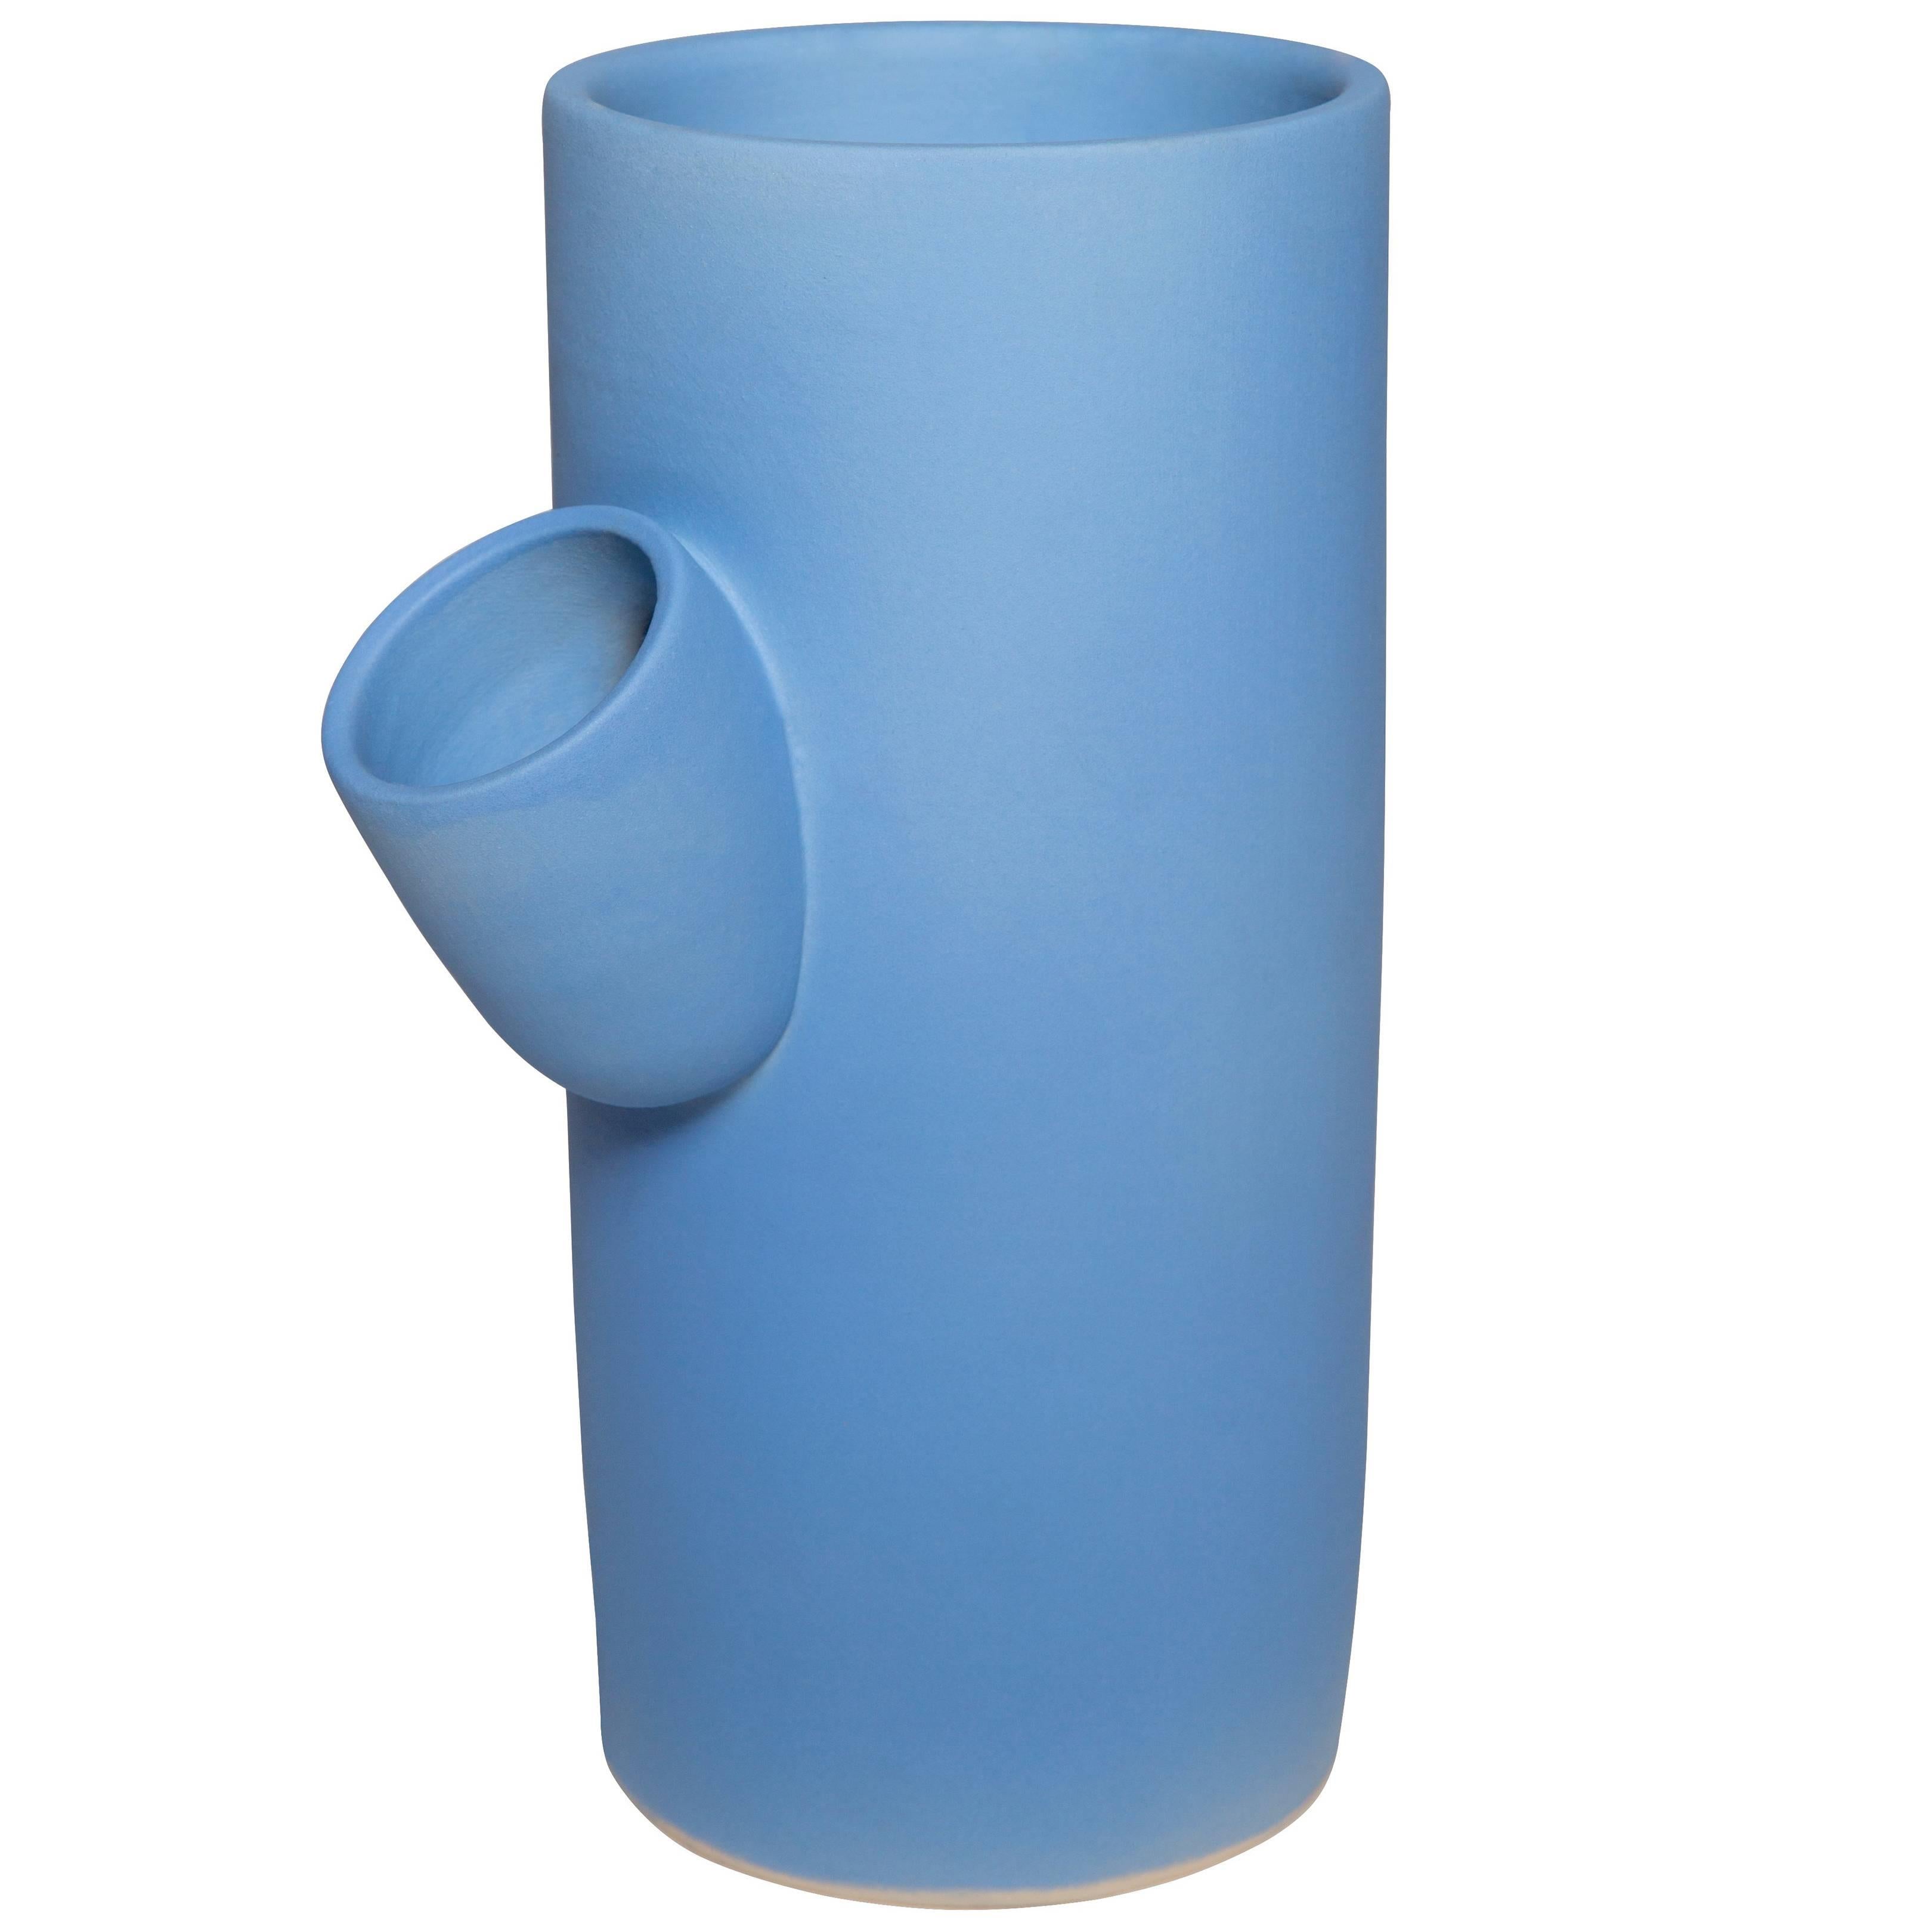  Vase en céramique Hydrangea fait à la main par Pieces, pichet bleu moderne personnalisable